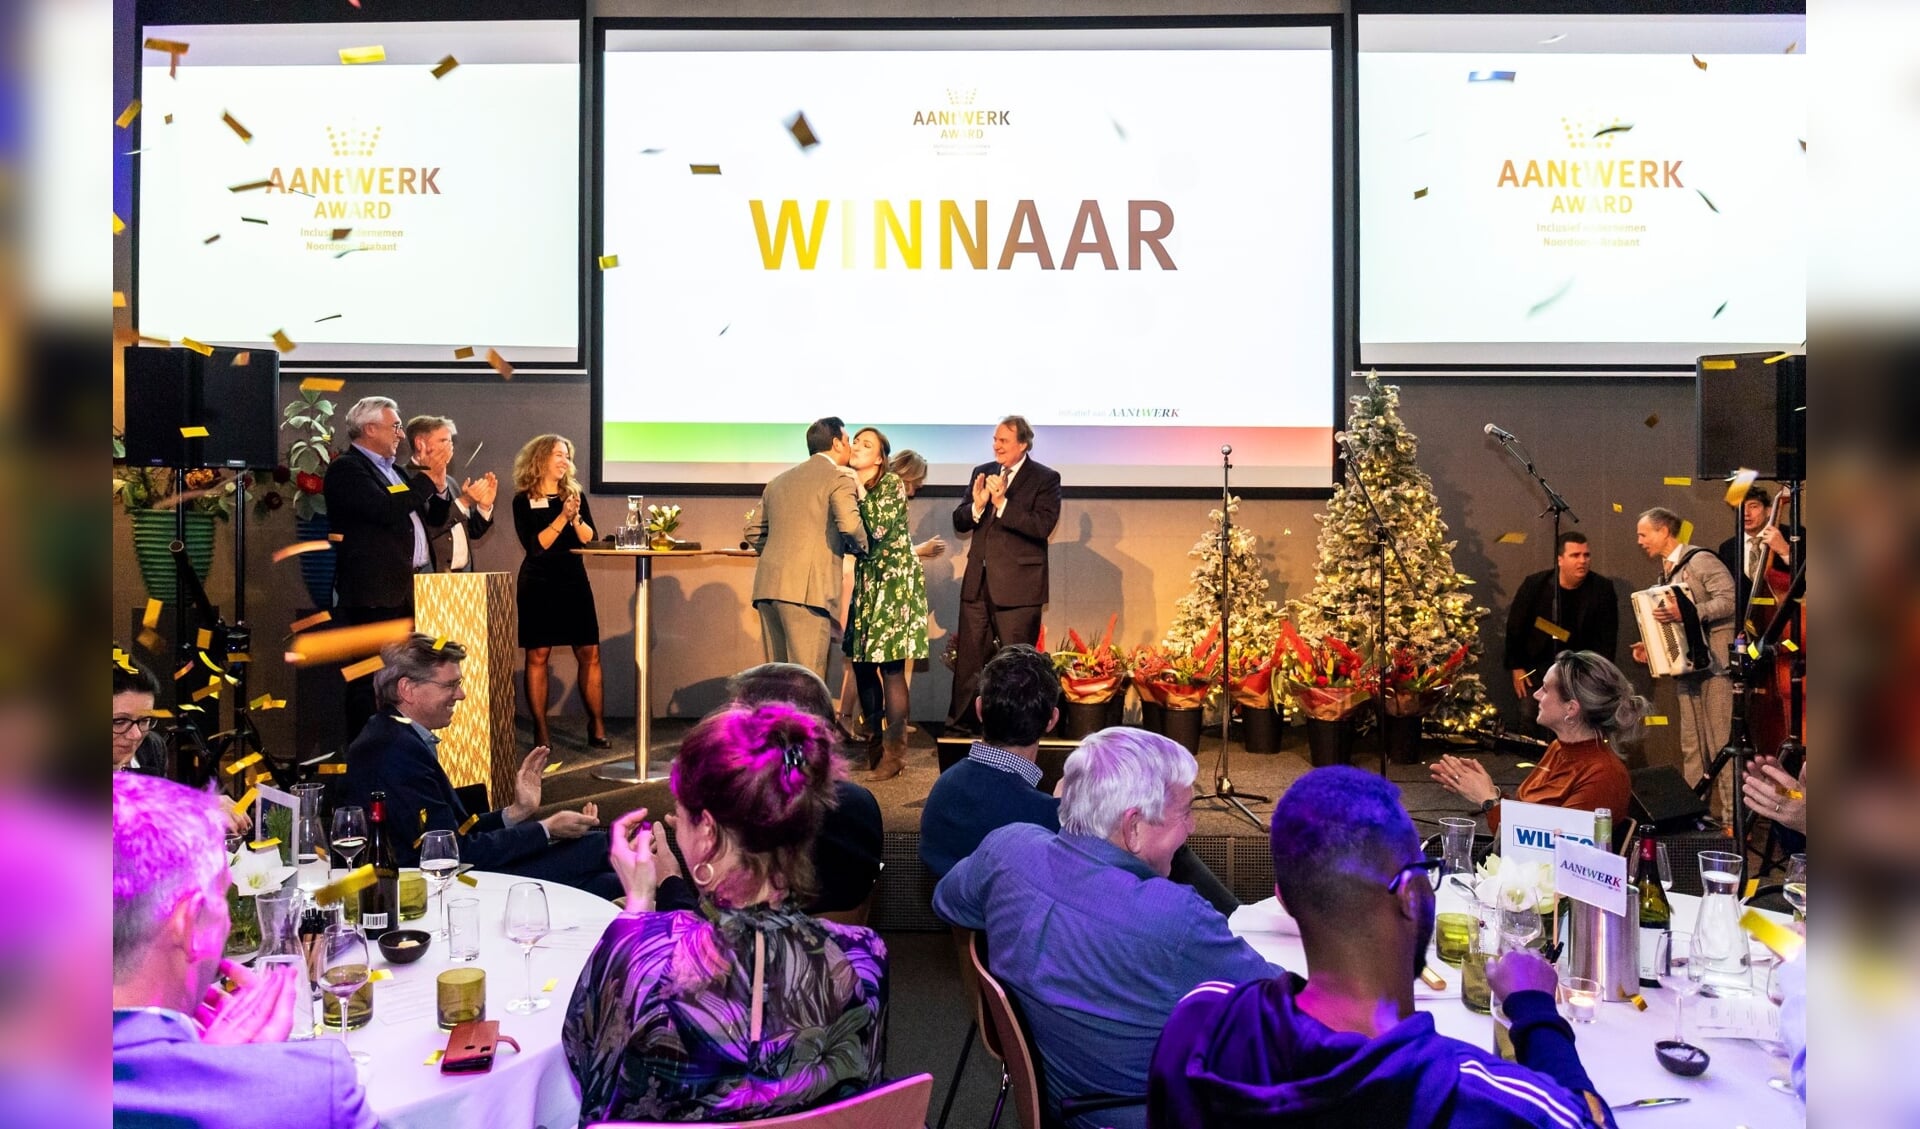 Berghemse vastgoedonderhoudsbedrijf Hendriks SGR de AANtWERK Award